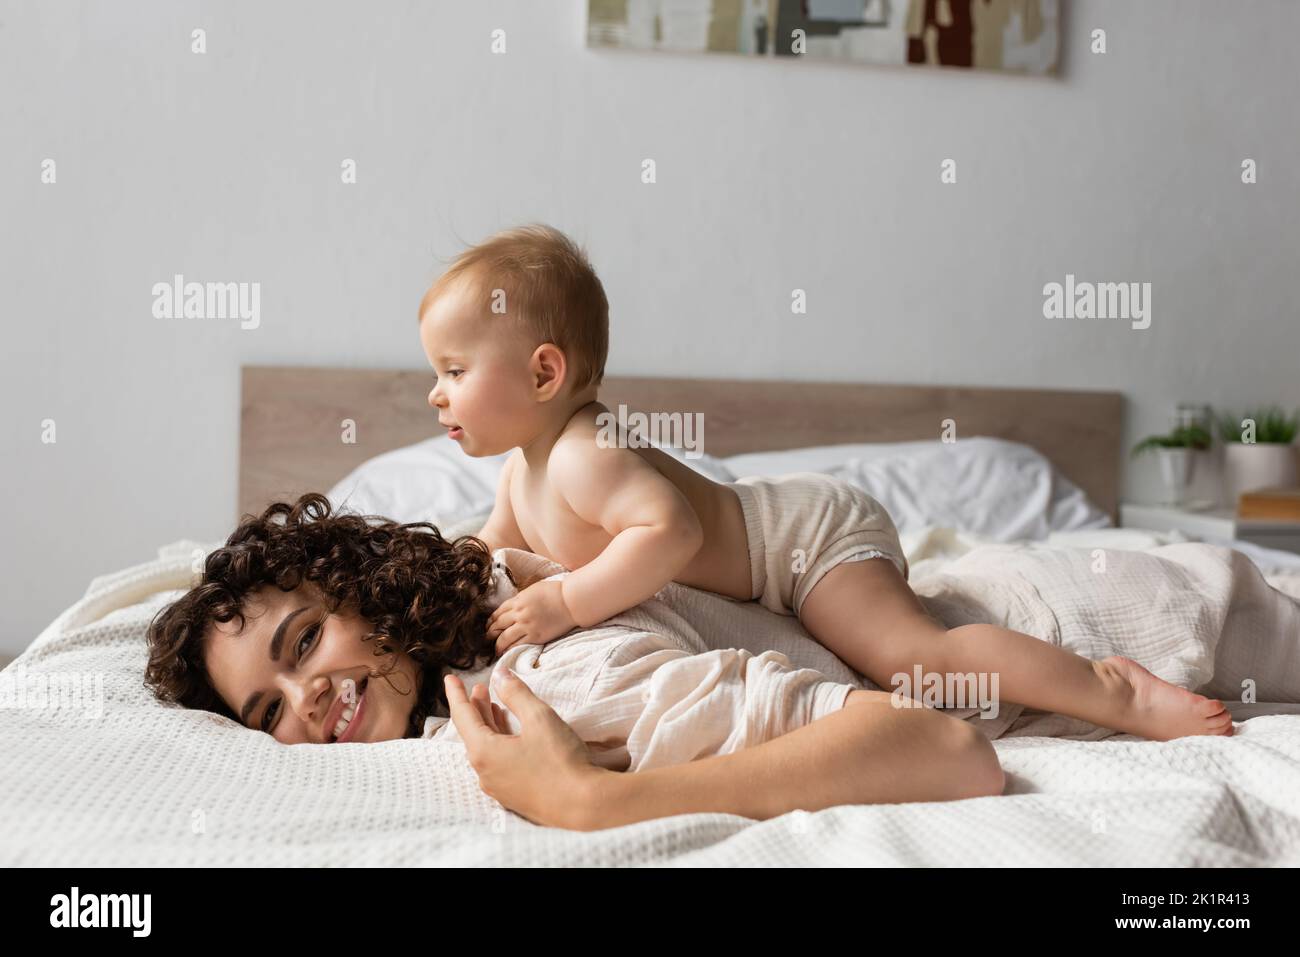 allegro bambino sdraiato sul retro della madre riccia sorridente in camera da letto, immagine stock Foto Stock